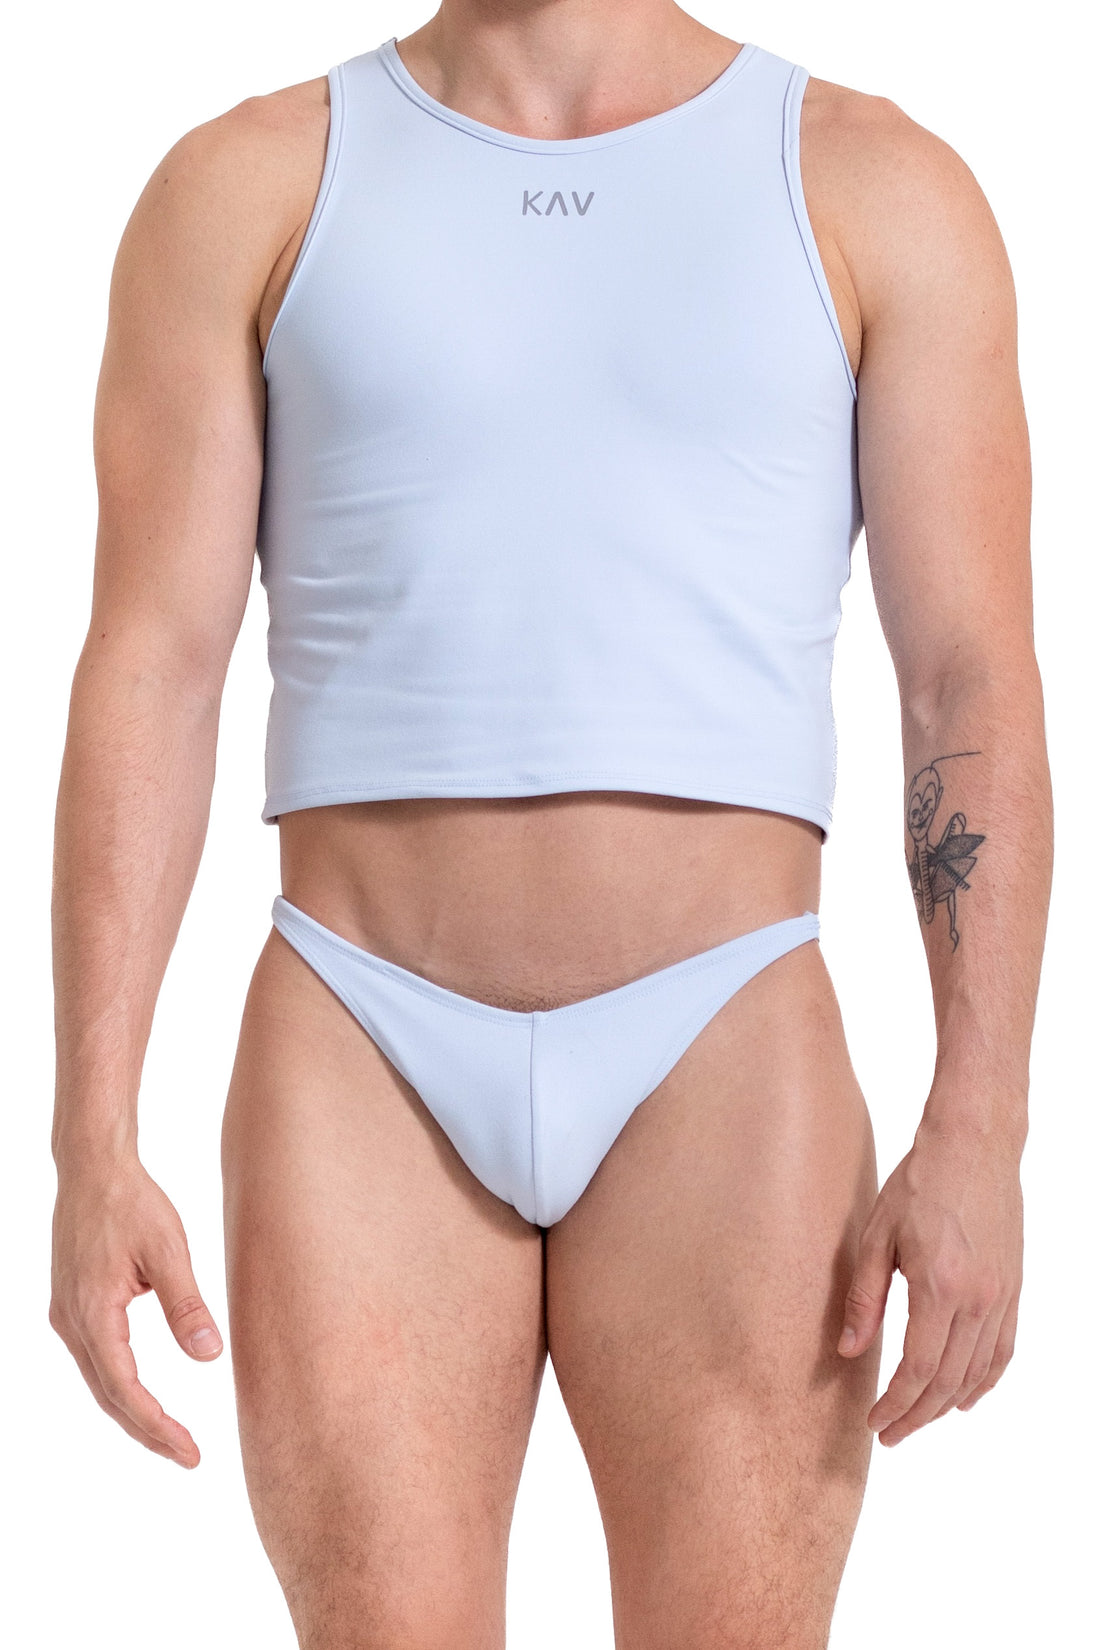 KAV Underwear Bottoms – Wear Men